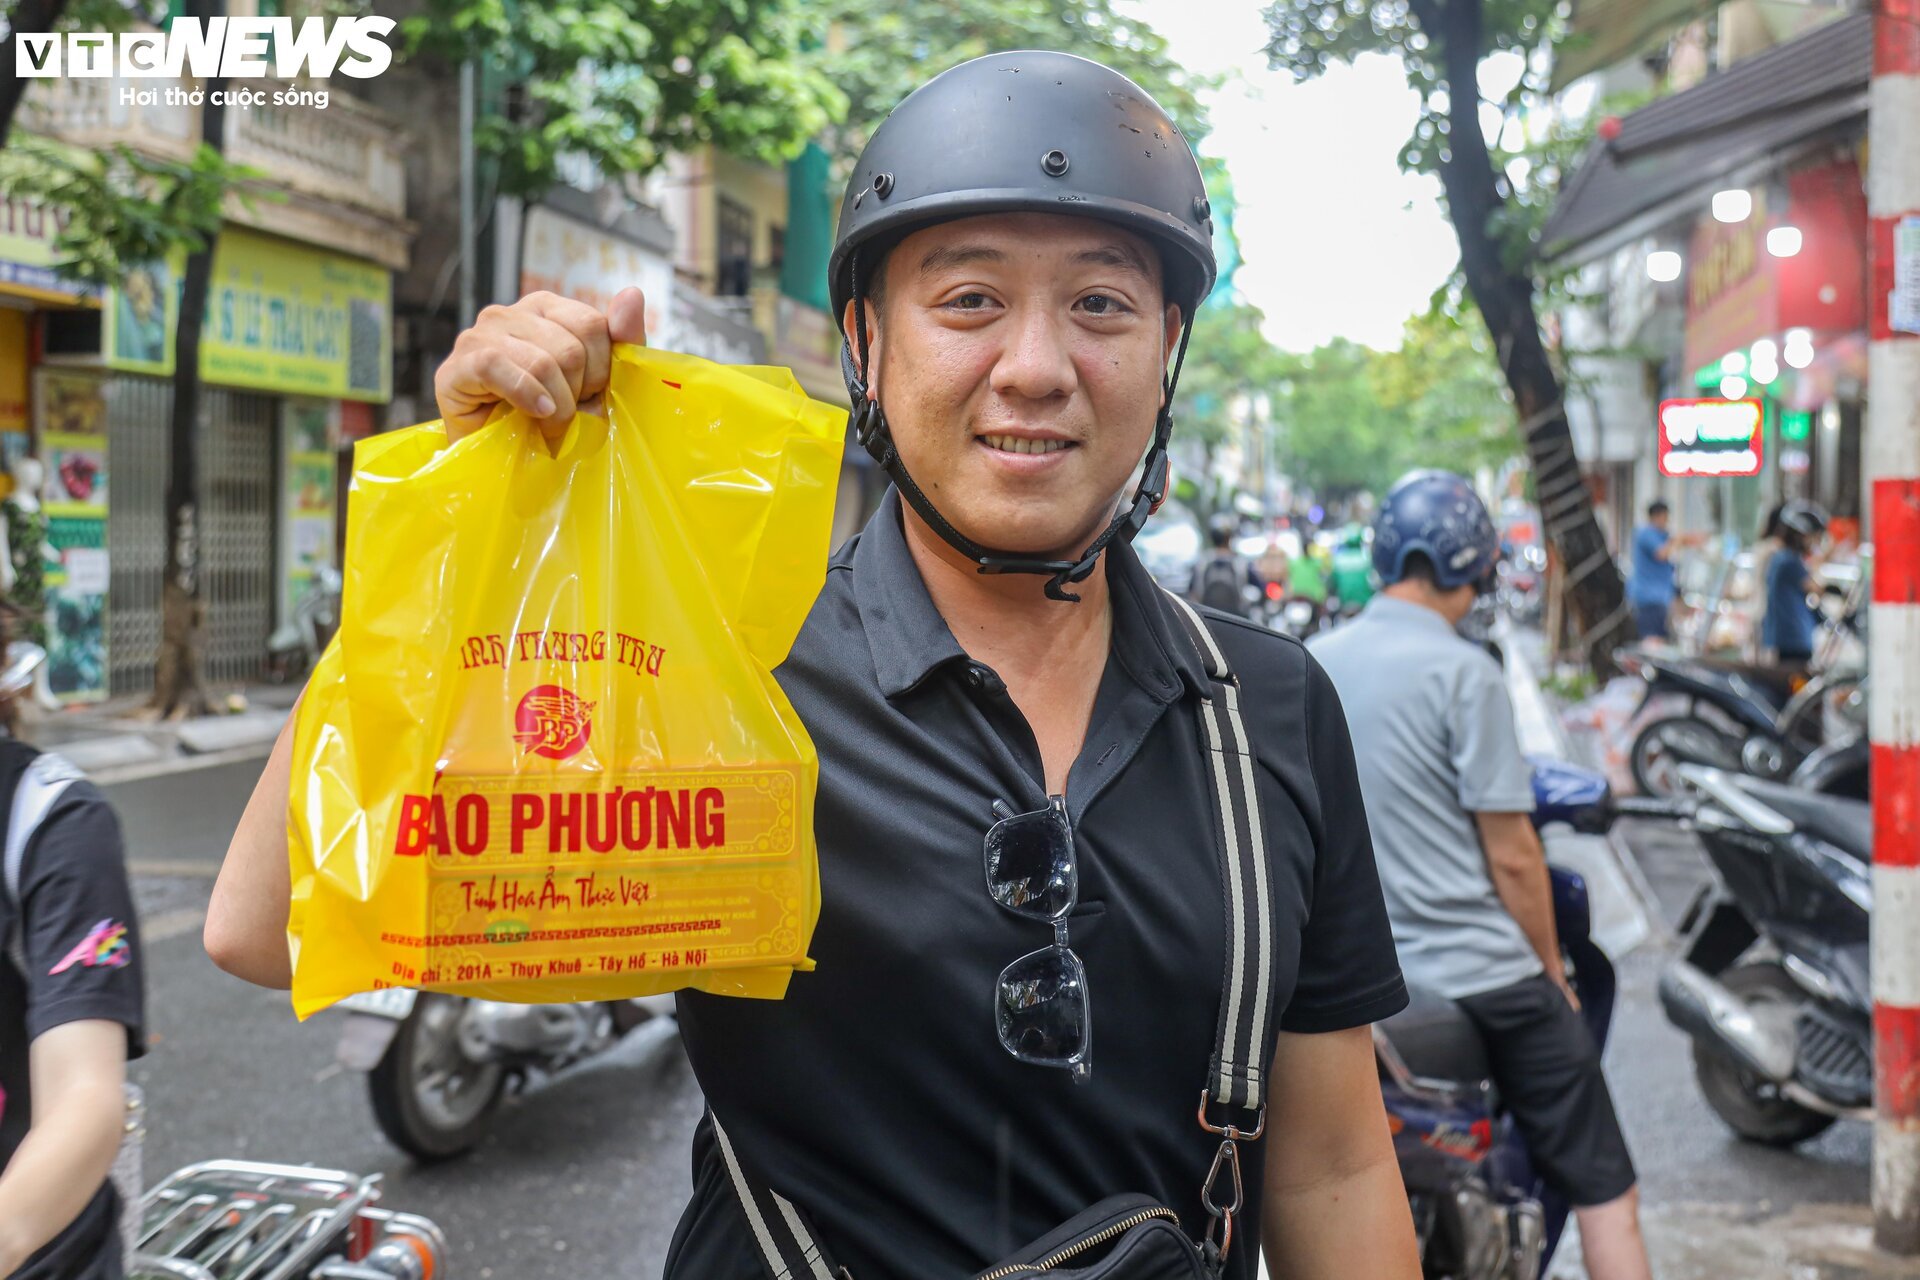 Hàng trăm người xếp hàng chờ mua bánh trung thu ở Hà Nội - Ảnh 9.